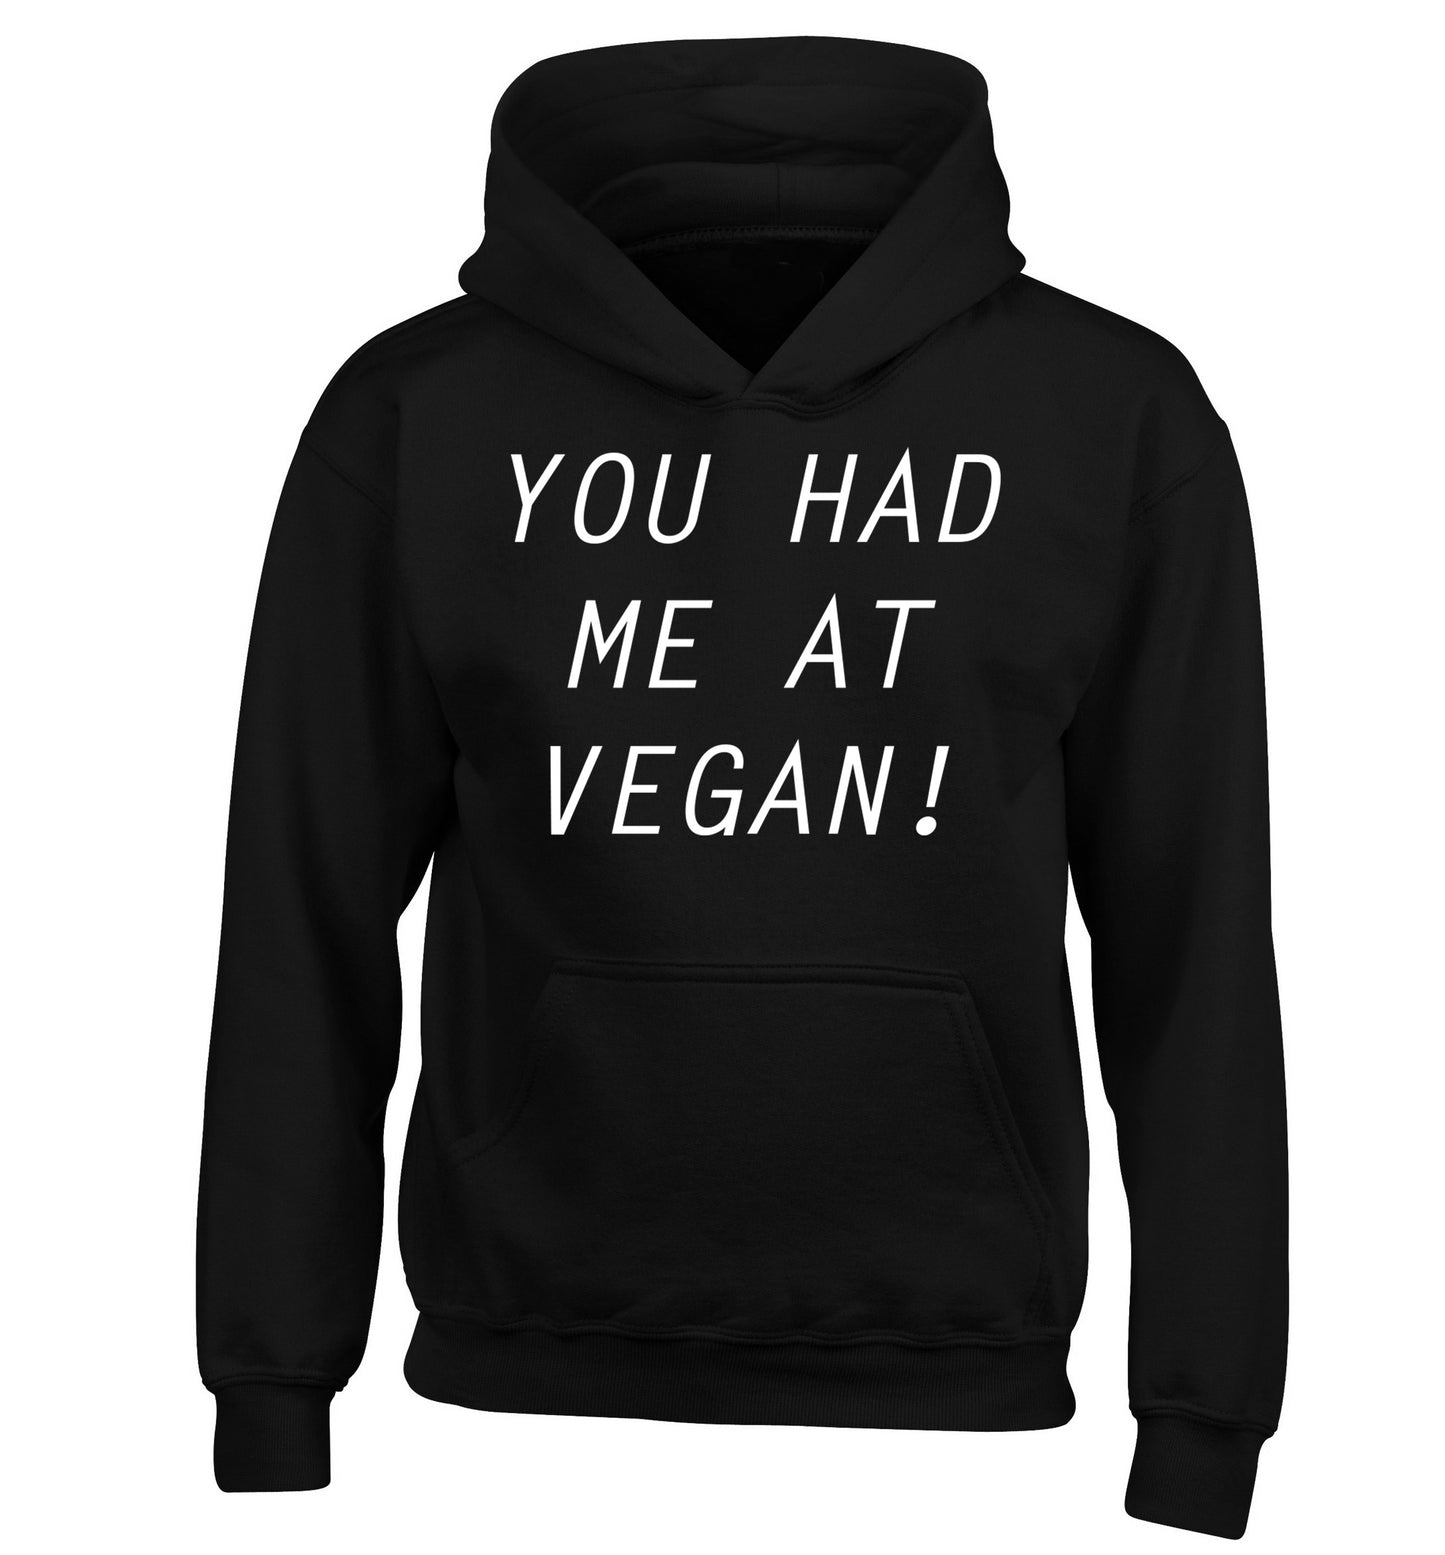 You had me at vegan children's black hoodie 12-14 Years